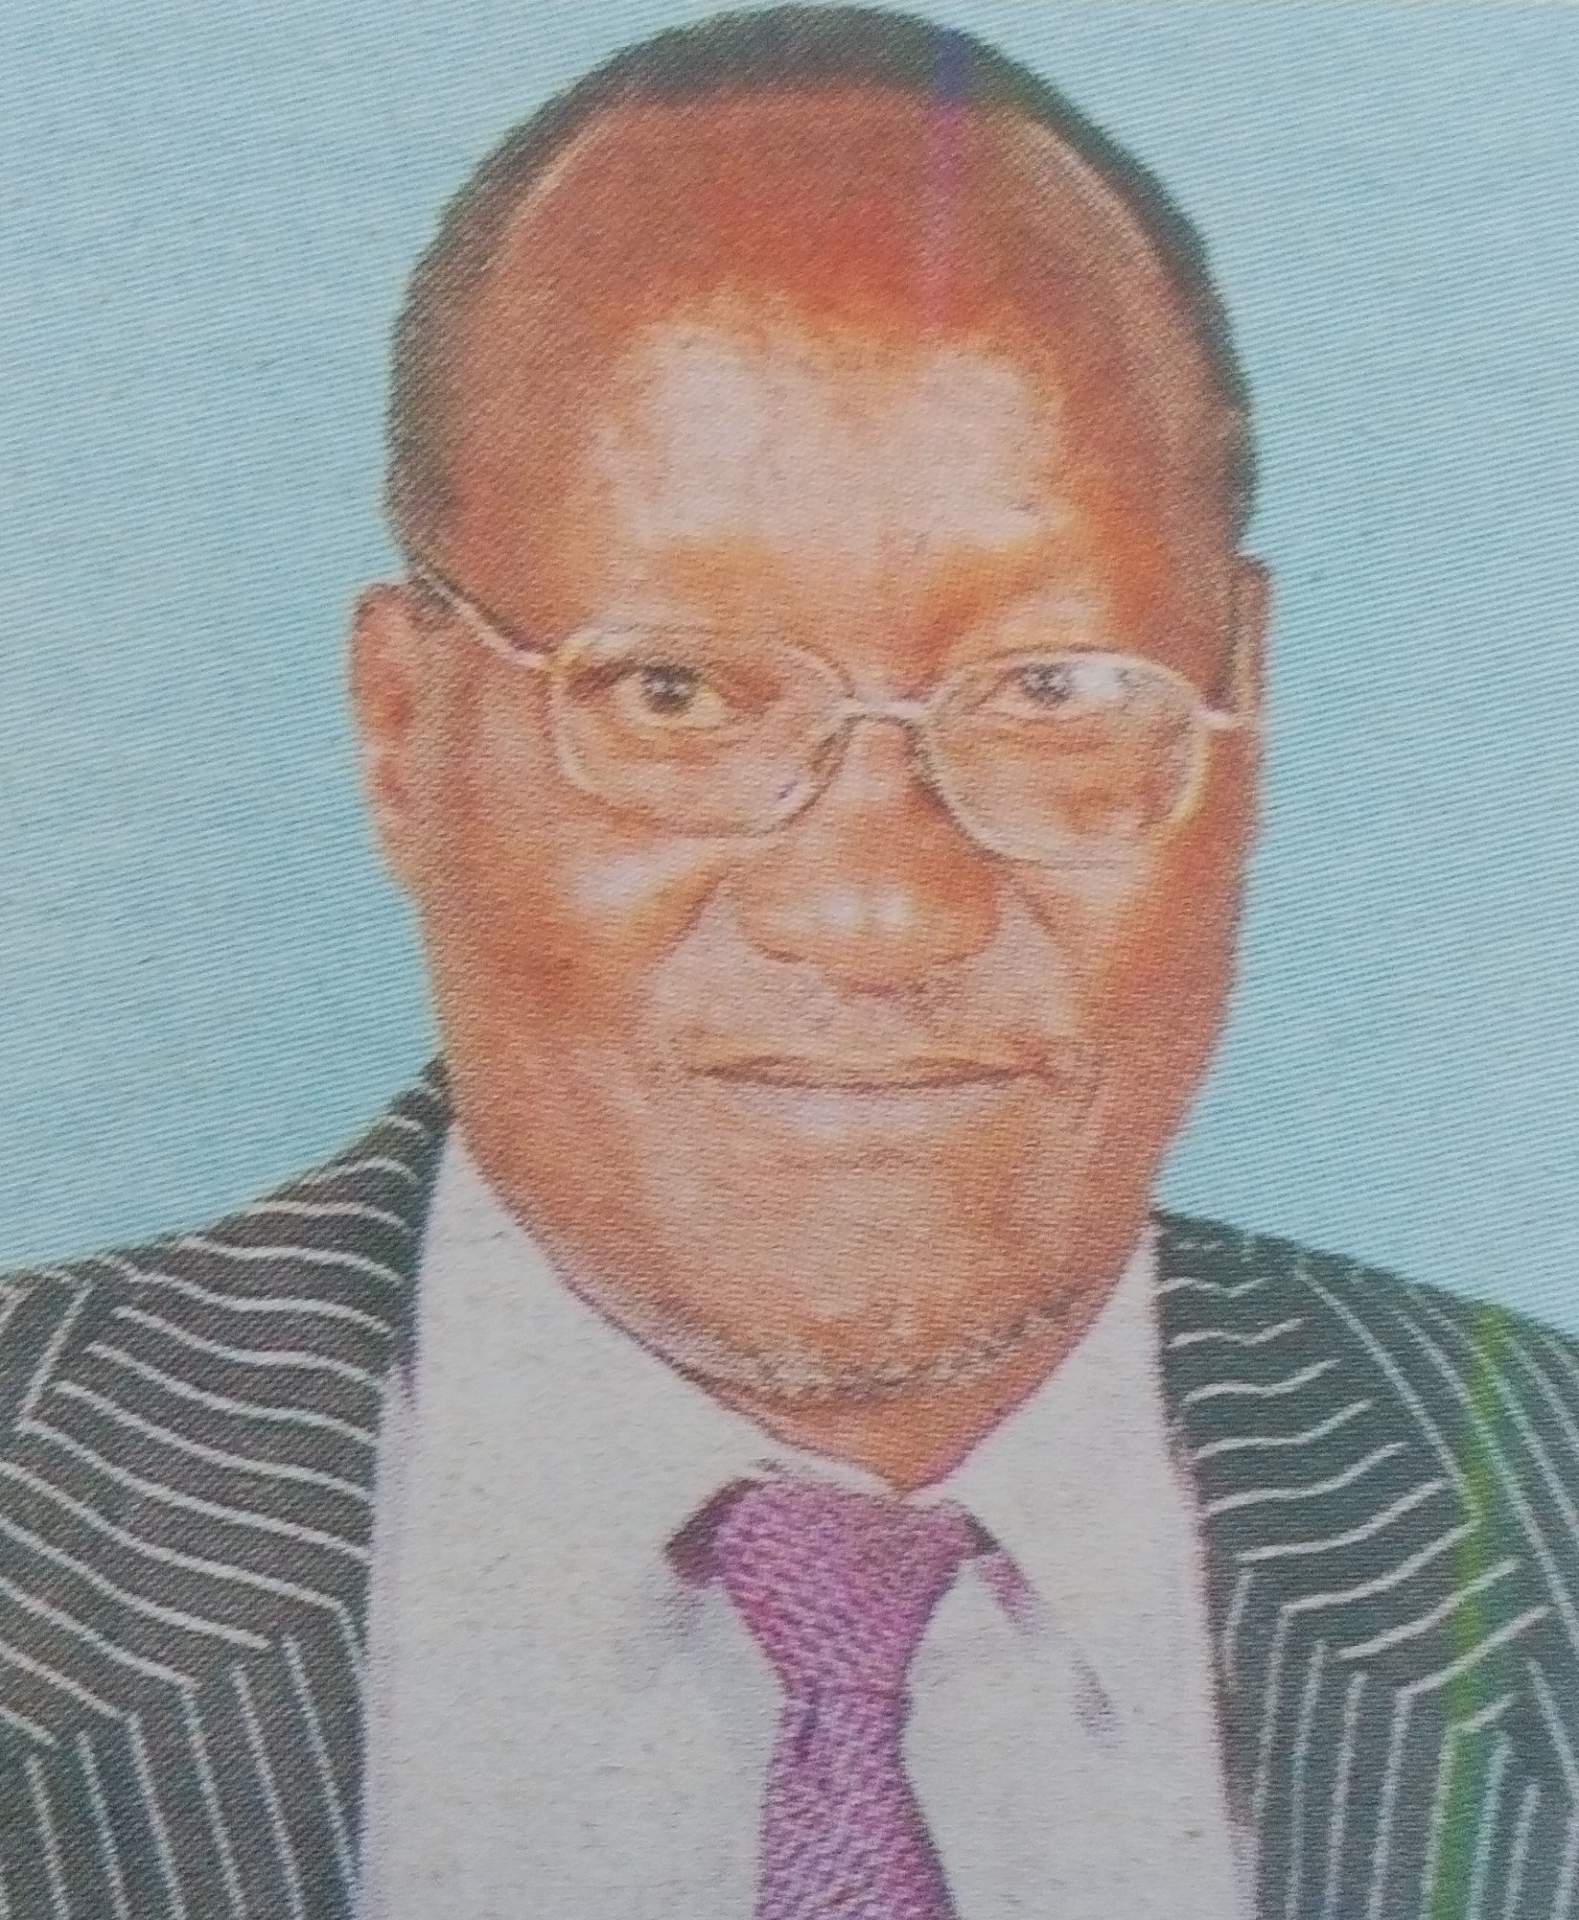 Obituary Image of Dominic Thangaru Ngechu